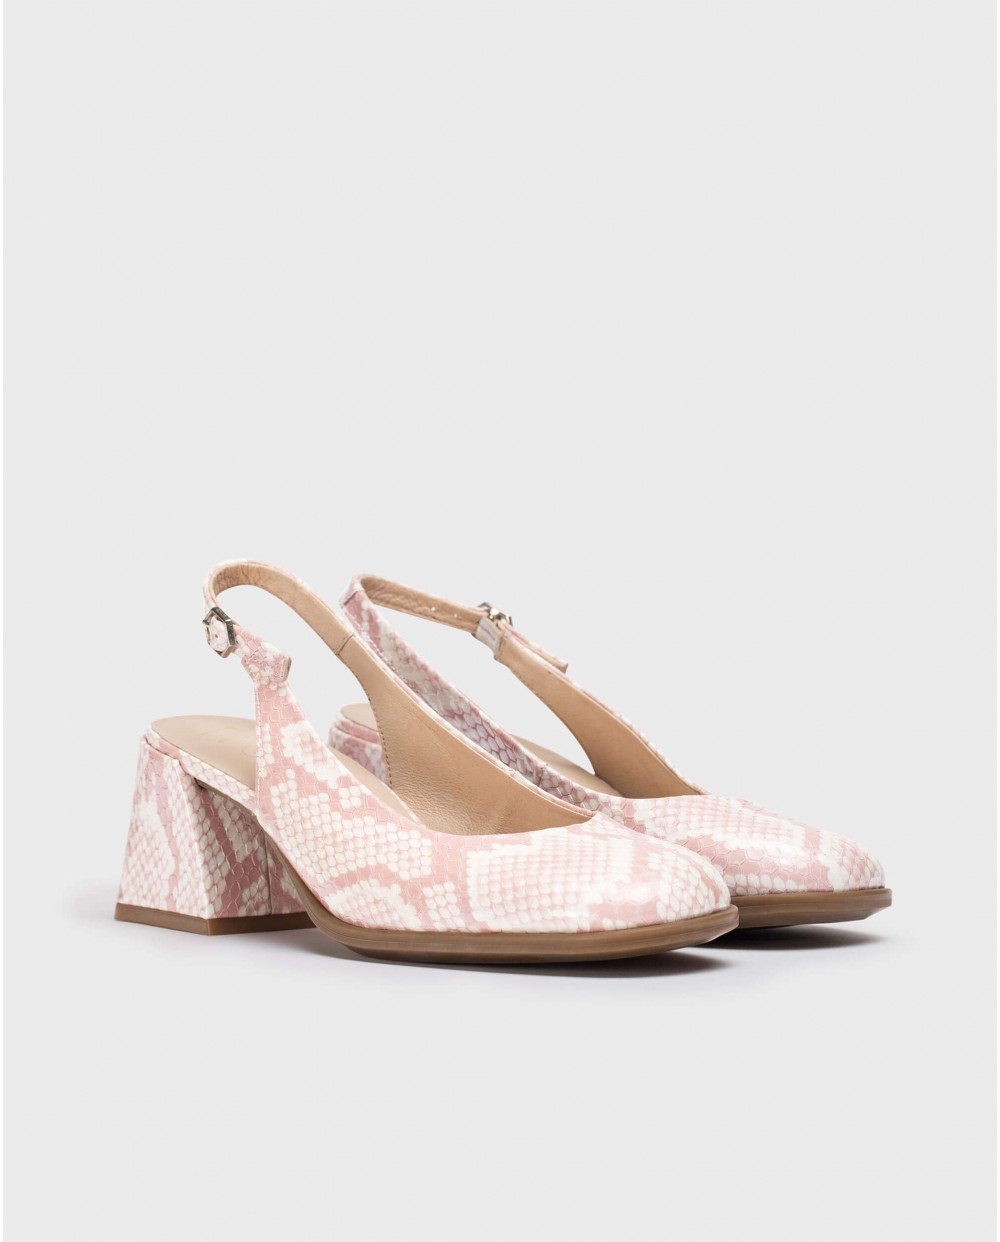 Wonders-Heels-Pink Adele shoes